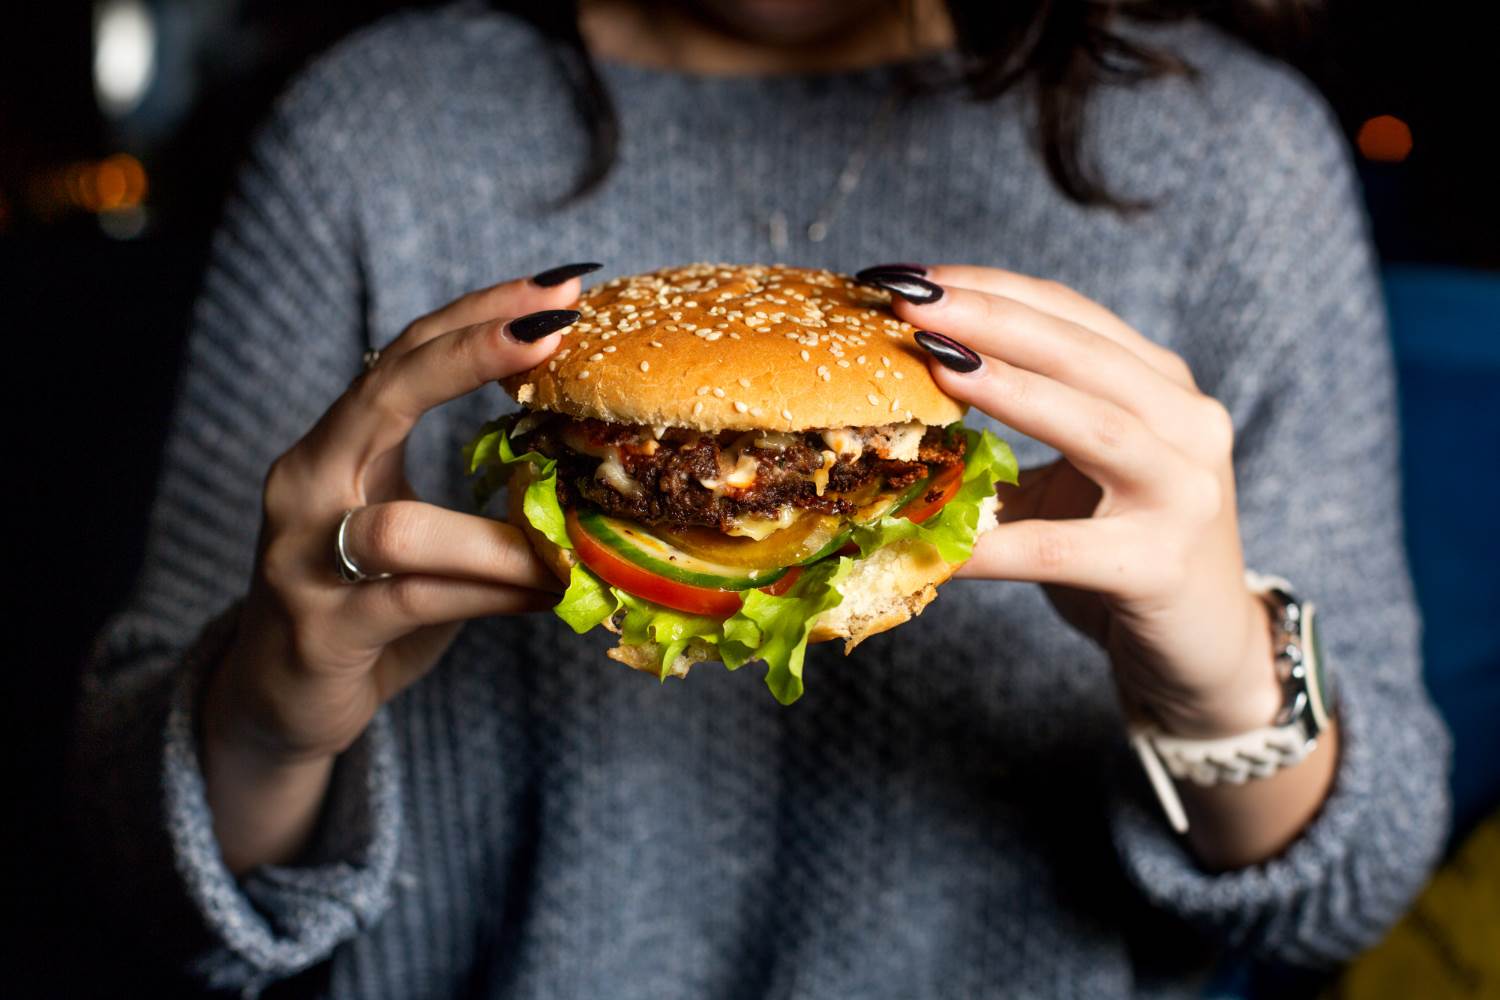  girl-holds-juicy-cheeseburger.jpg 